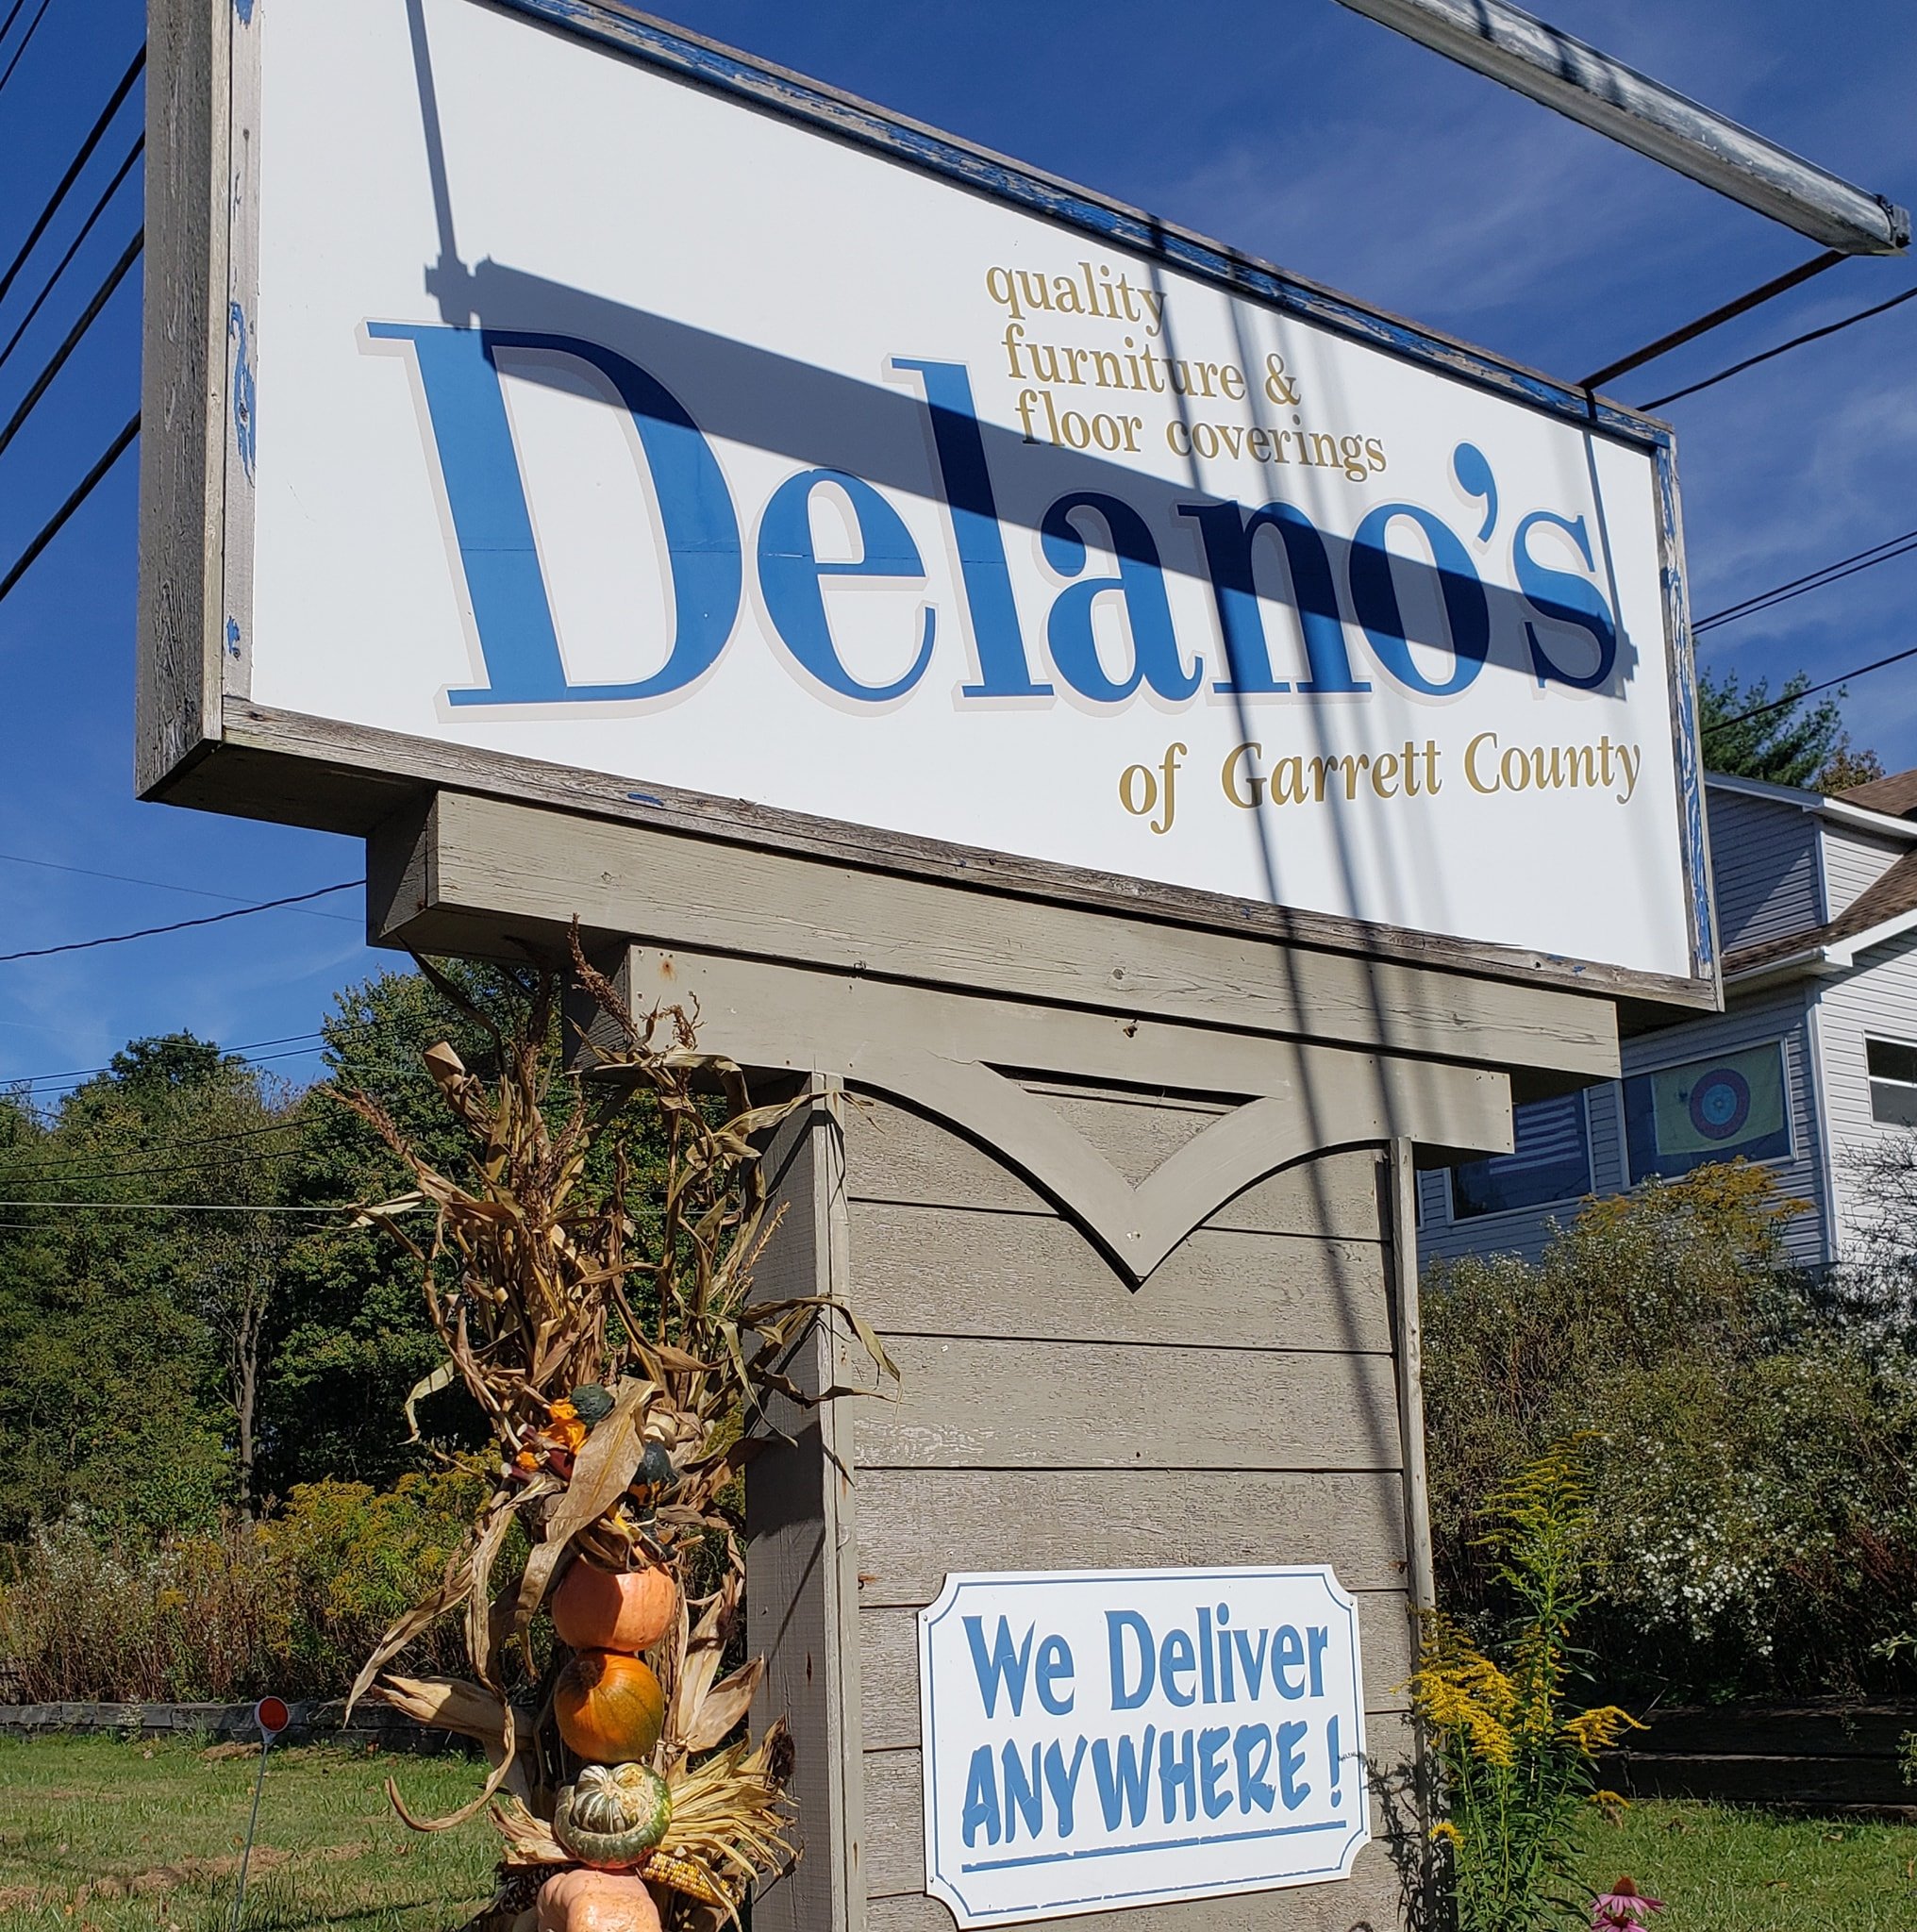 Delano's